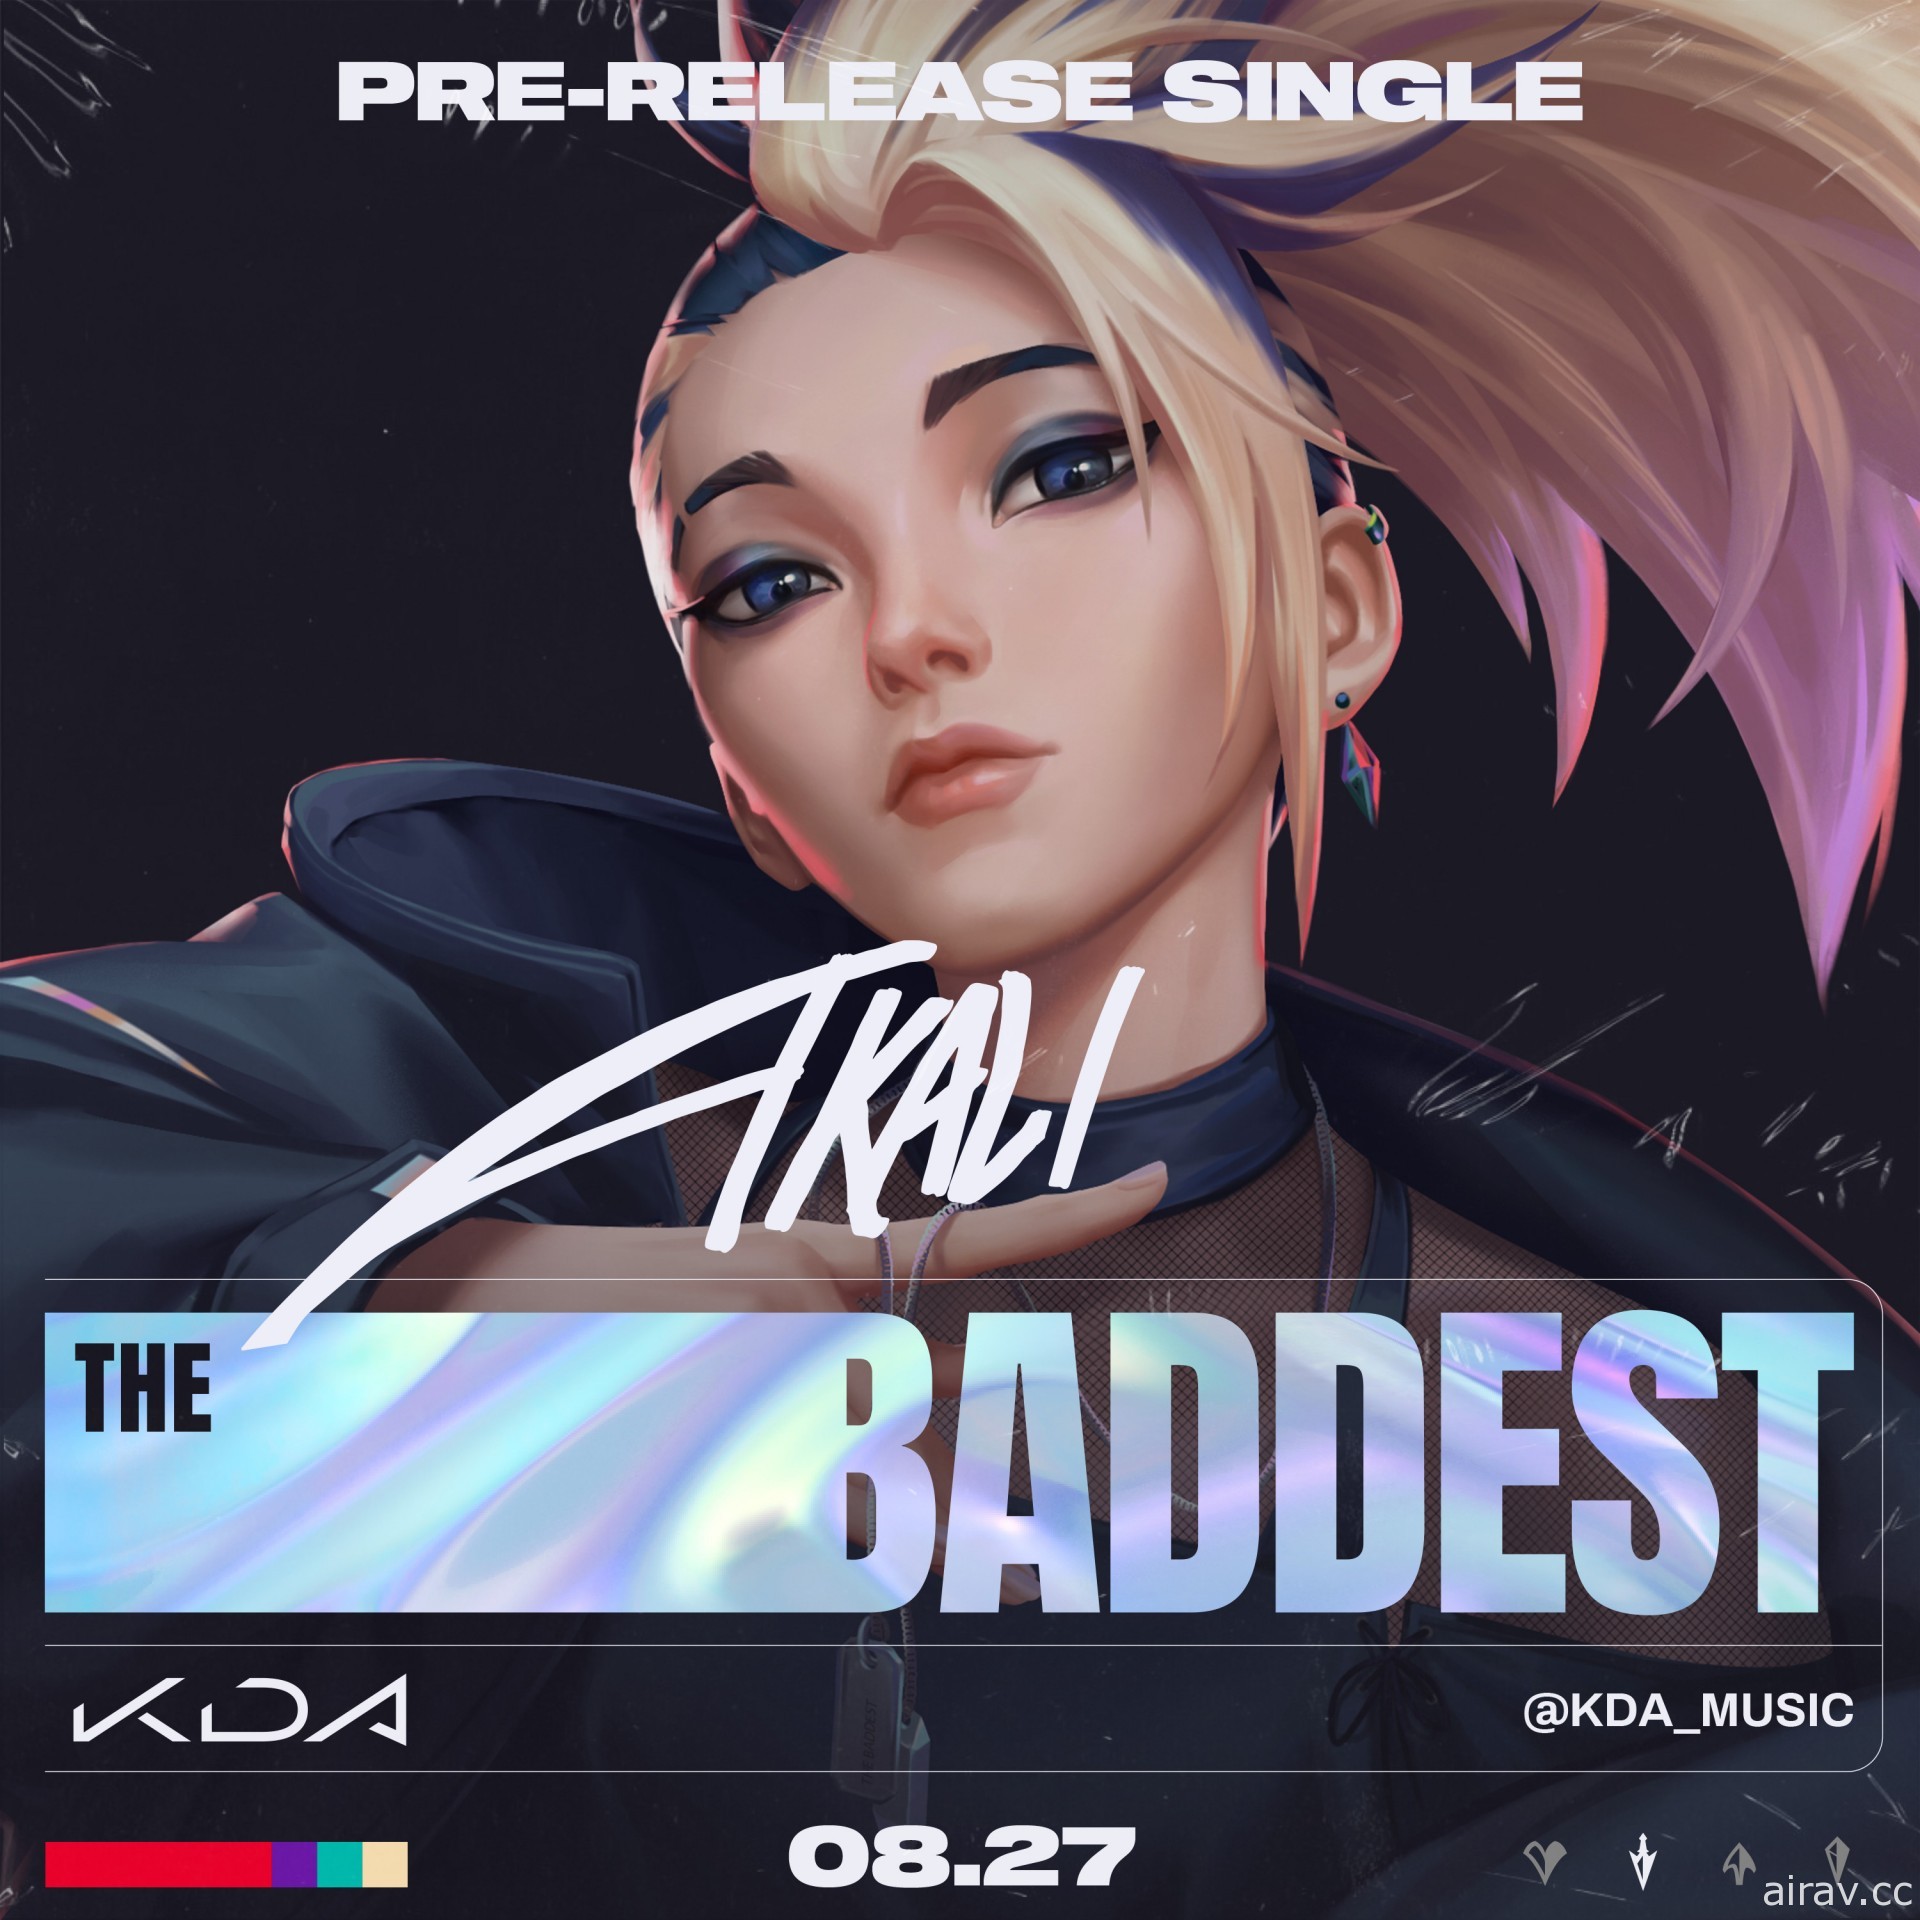 《英雄聯盟》虛擬音樂團體 K/DA 回歸 公開全新單曲《The BADDEST》